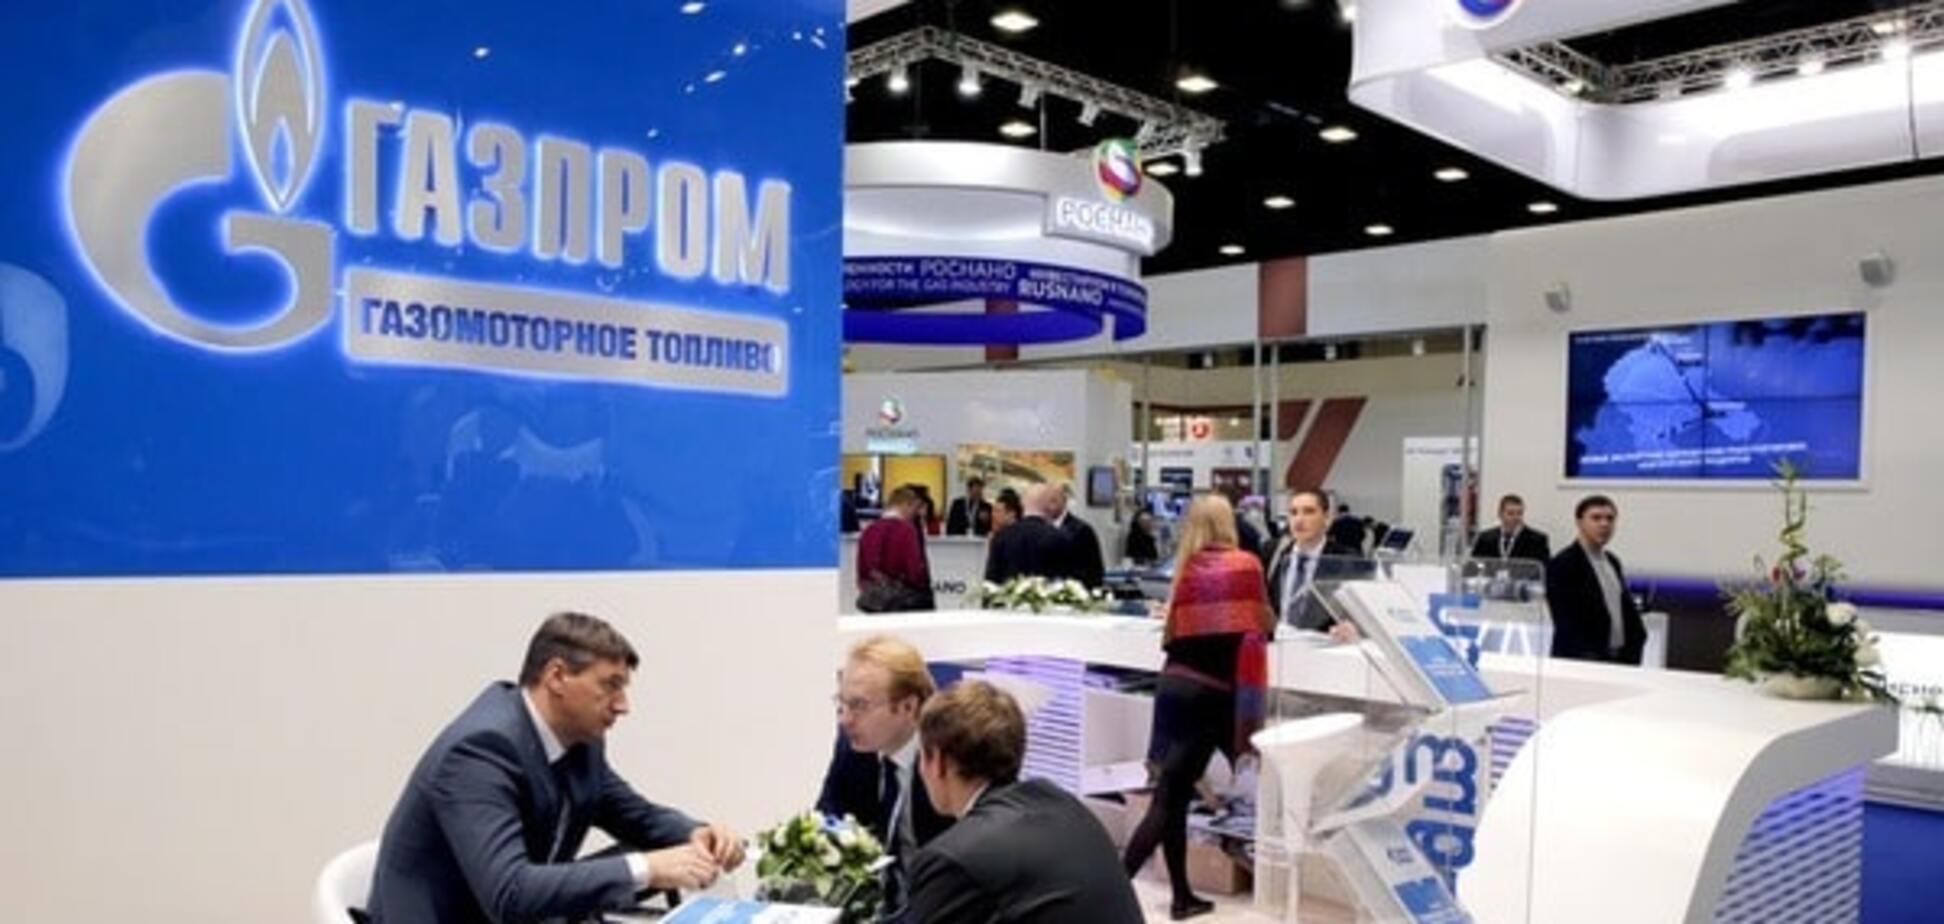 'По наклонной': 'Газпром' обвалився на 187 позицій у рейтингу світових брендів